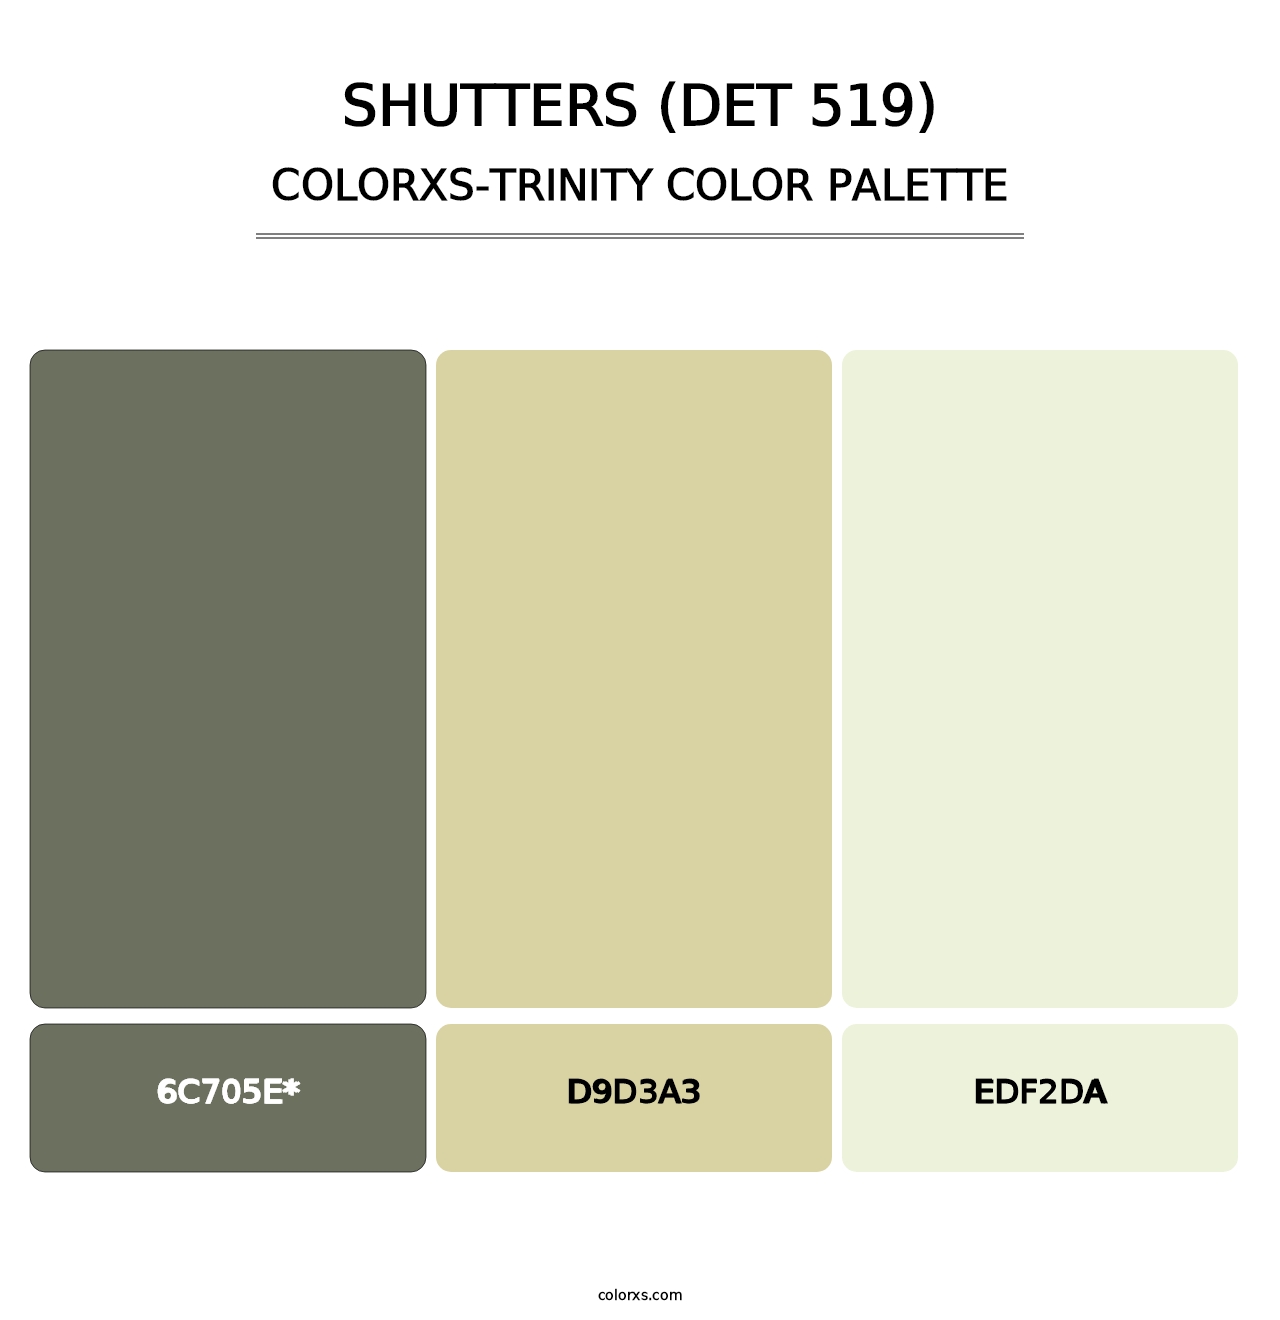 Shutters (DET 519) - Colorxs Trinity Palette